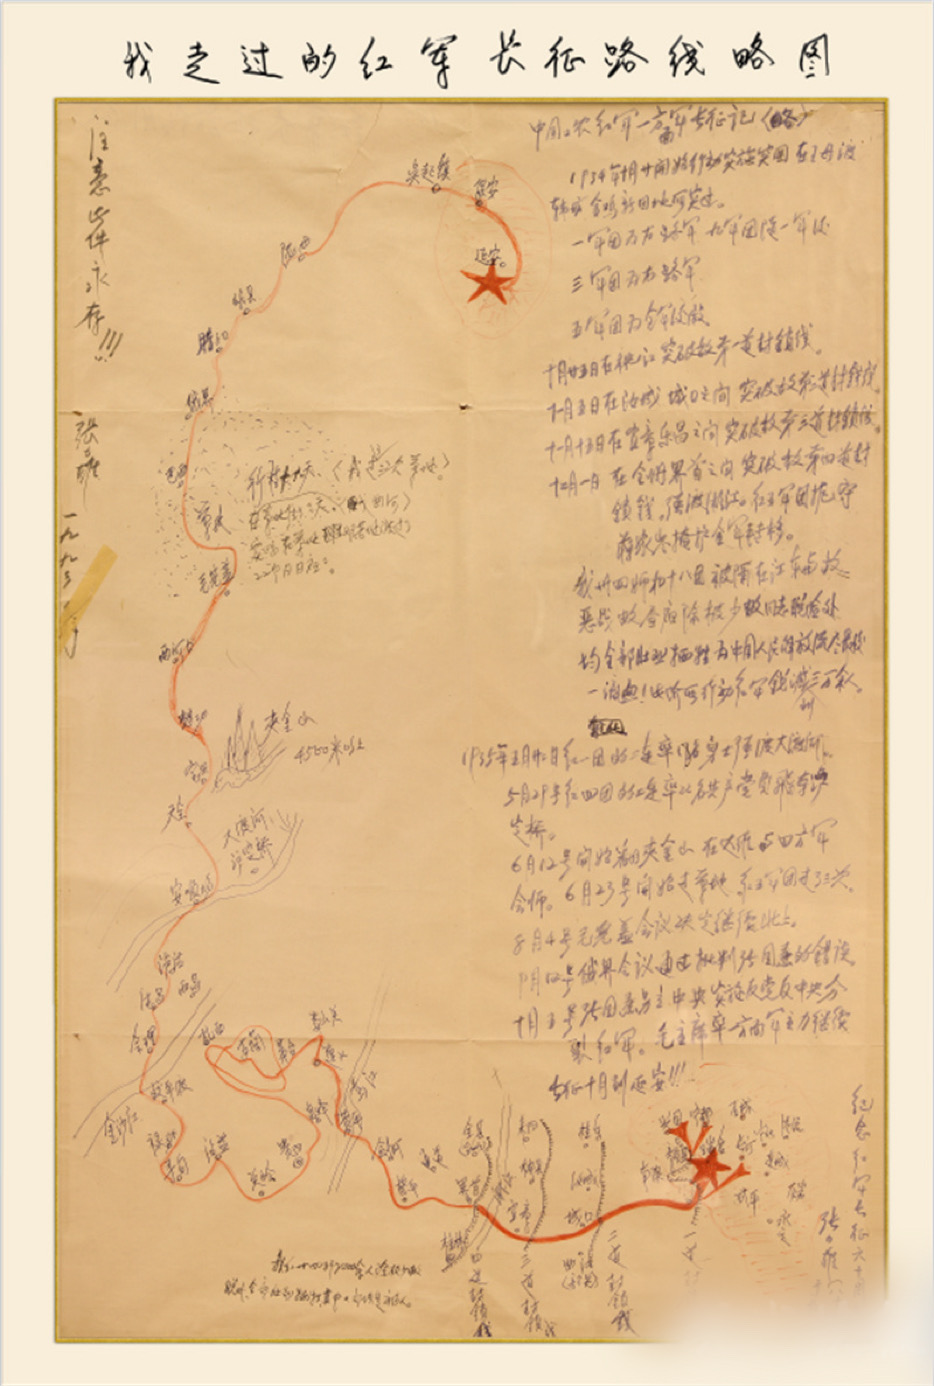 1998年，85歲的張力雄親手繪制了《我走過的紅軍長征路線略圖》，密密麻麻地寫下他長征時行軍的路程和戰鬥過的地方。